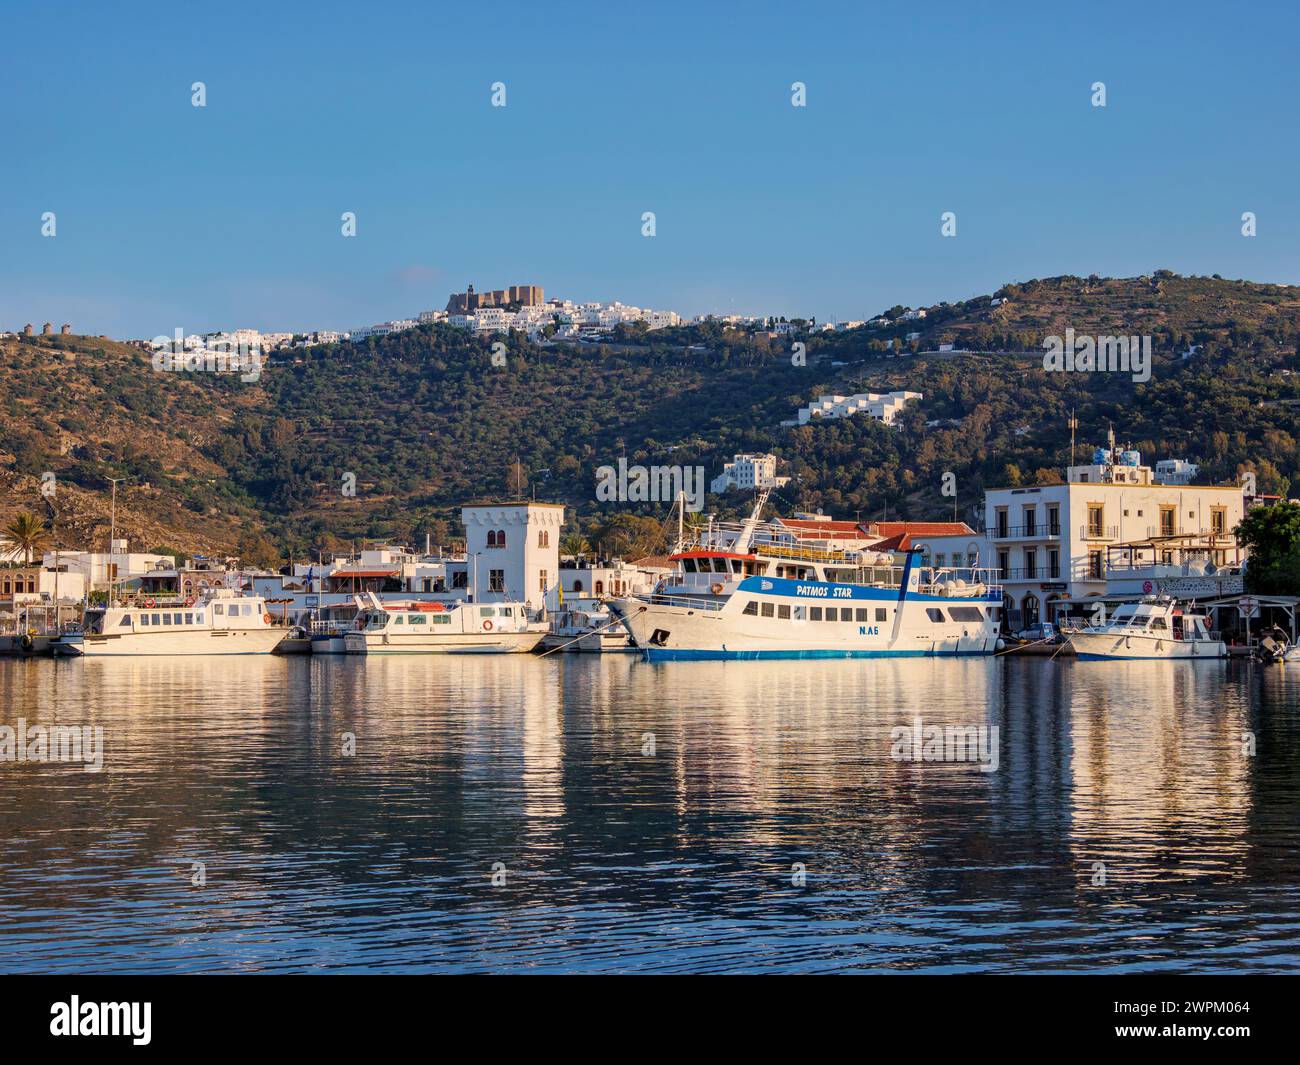 Vista sul porto di Skala verso il monastero di San Giovanni Teologo e Patmos Chora, l'isola di Patmos, il Dodecaneso, le isole greche, la Grecia, Europa Foto Stock